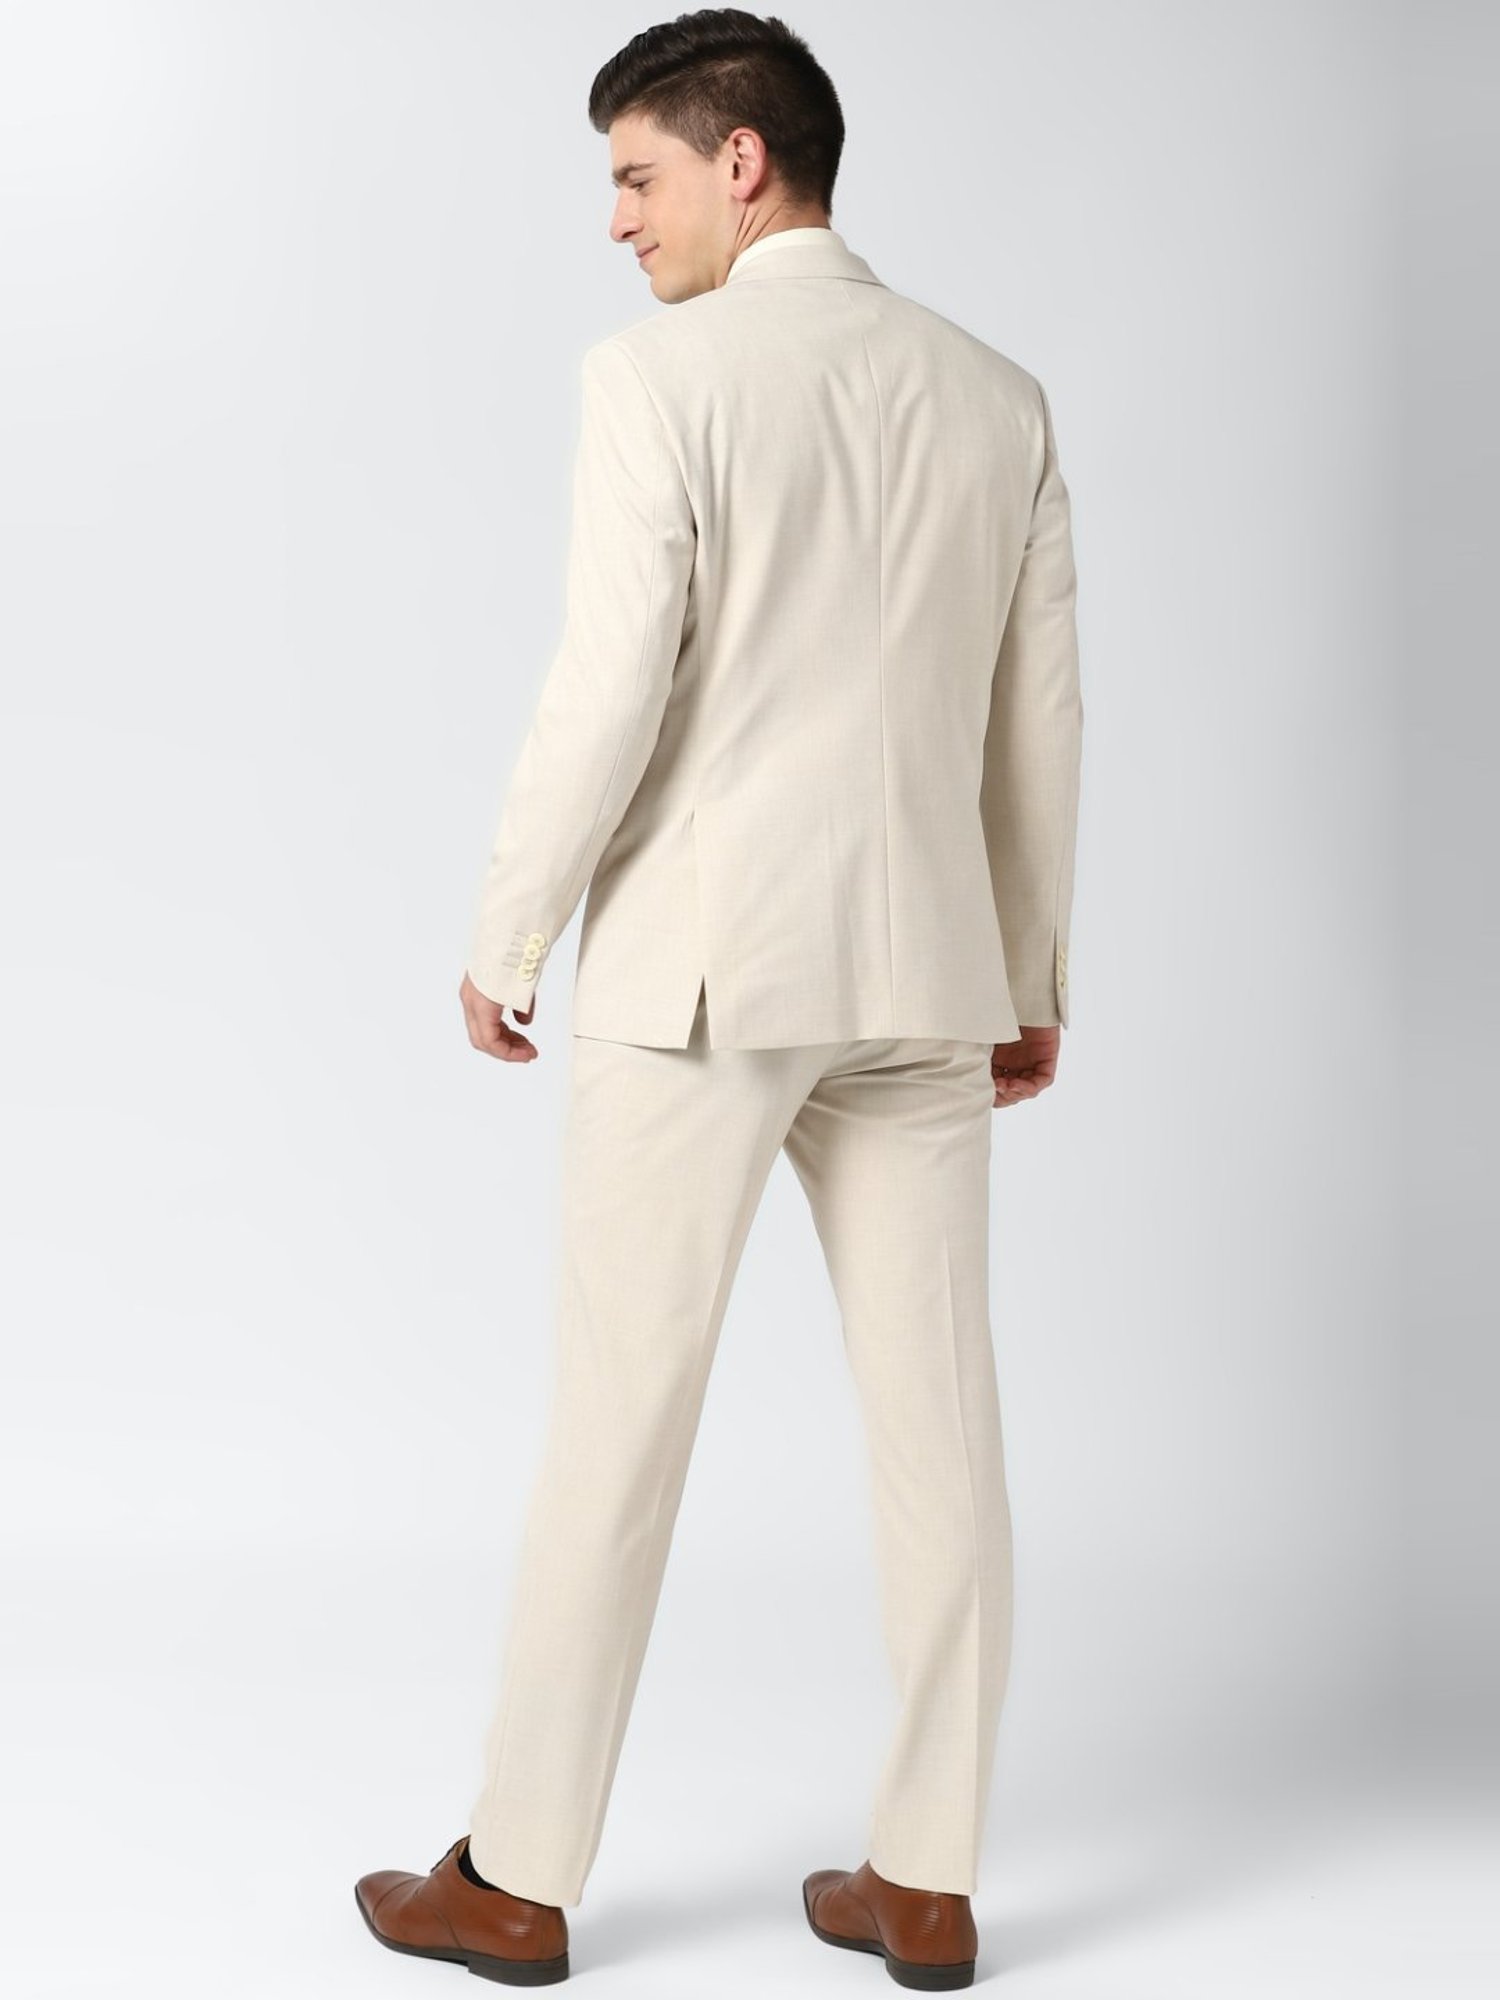 Moon Mist Beige Plain-Solid Premium Cotton Double Breasted Suit For Men.